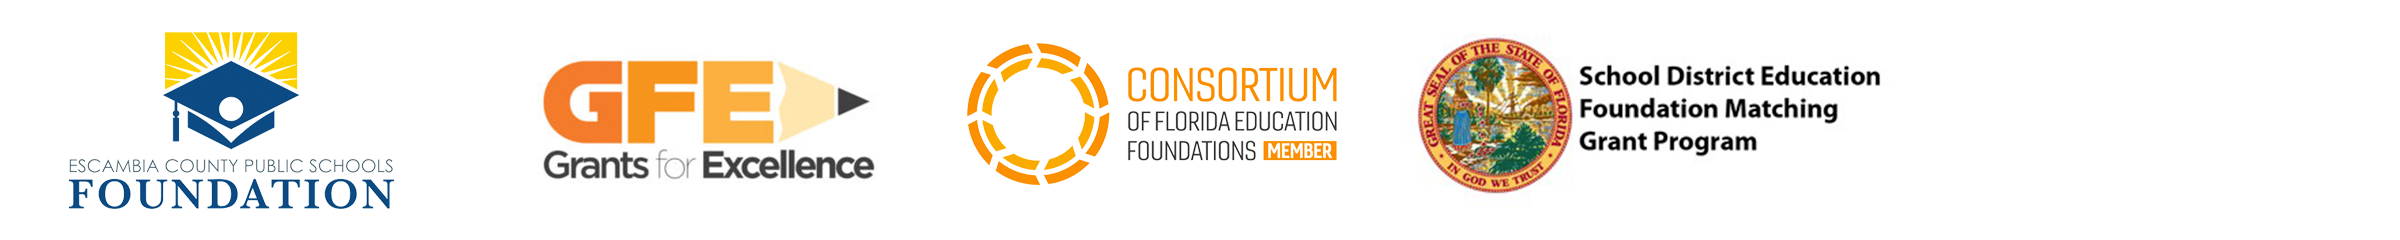 Escambia County Public Schools Foundation logo